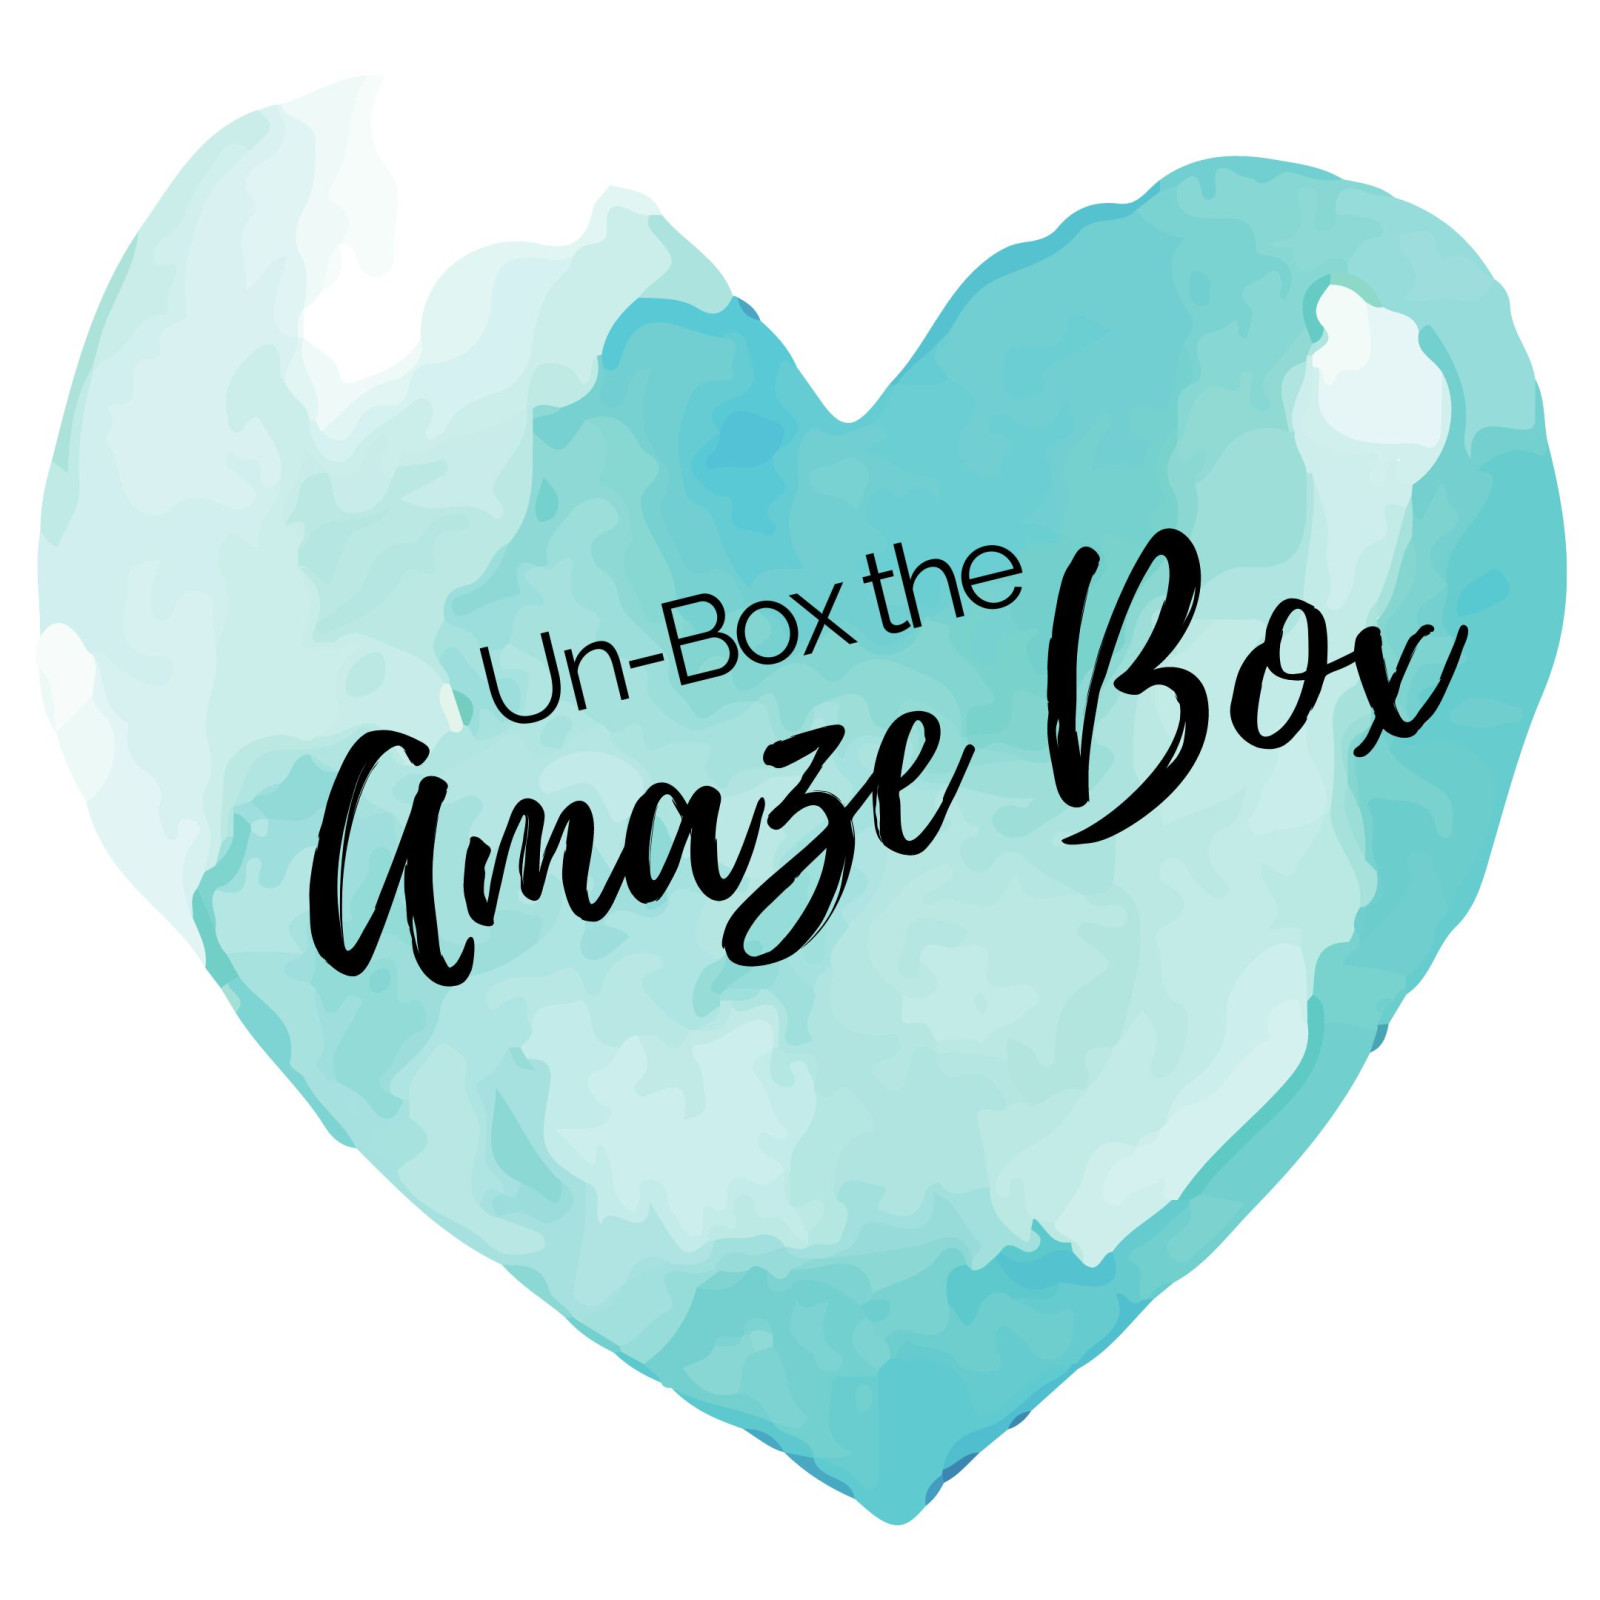 Unbox The AmazeBox